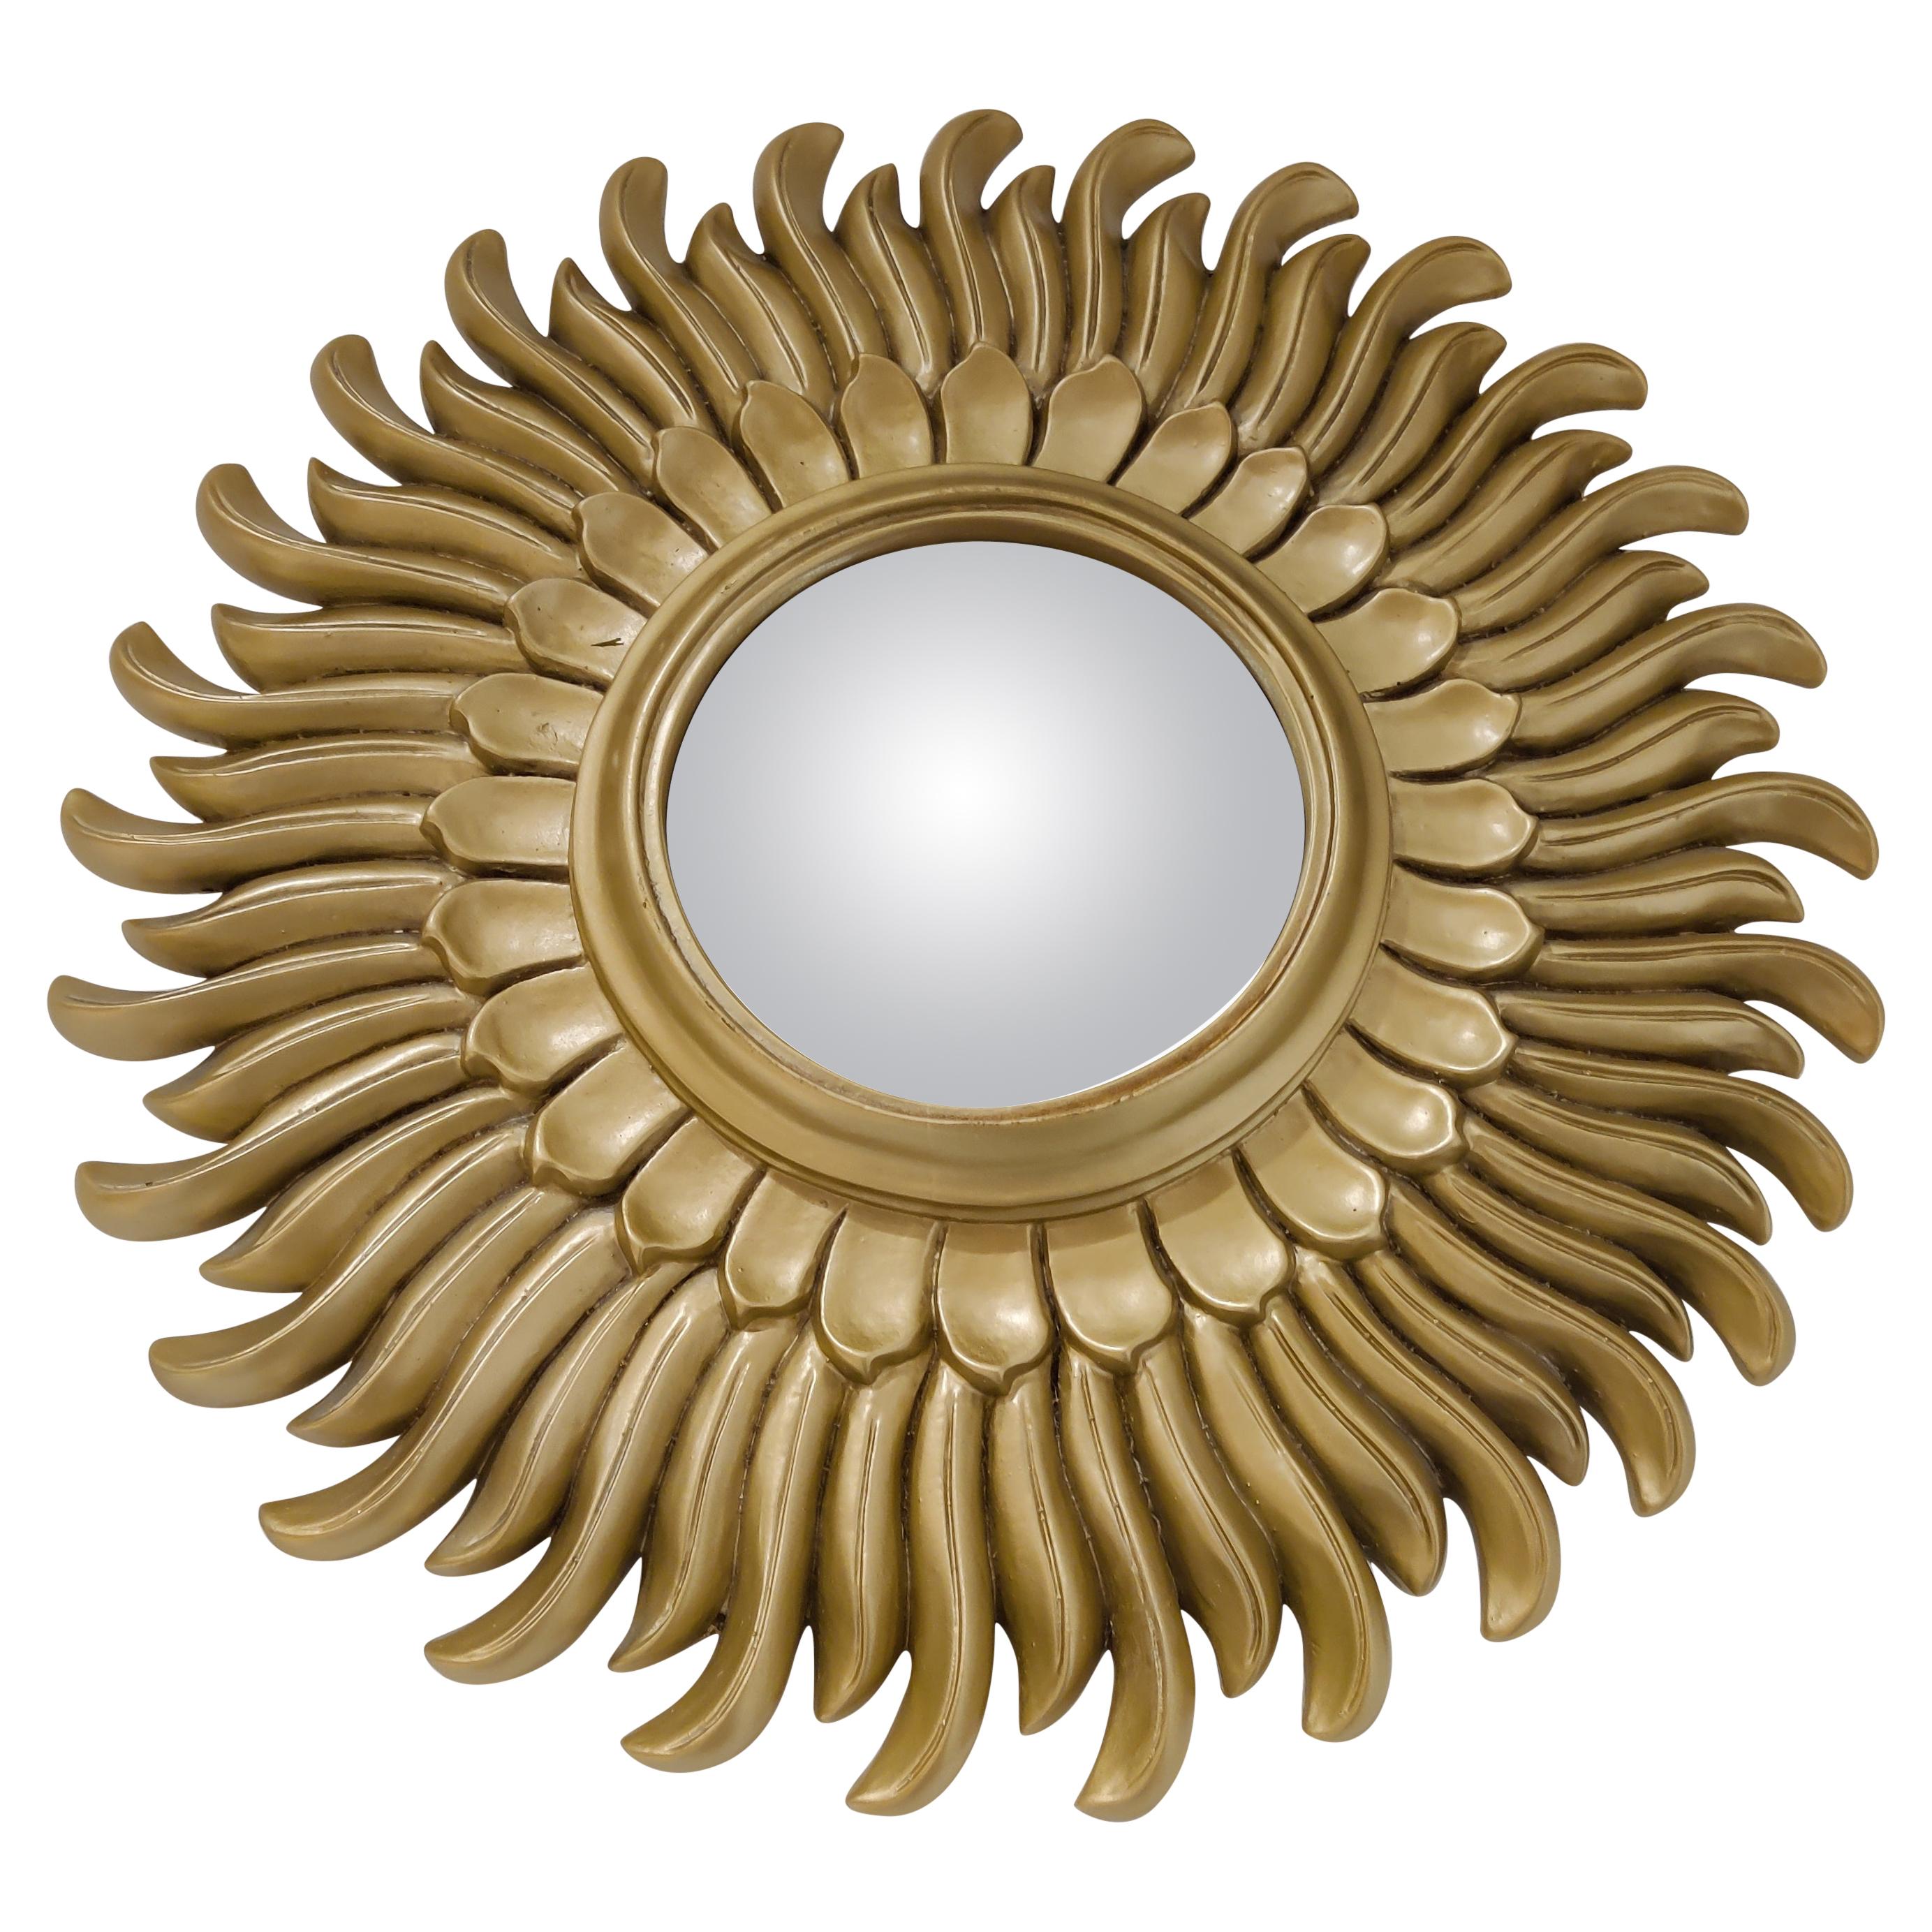 Mid Century Golden Sunburst Mirror, 1960s